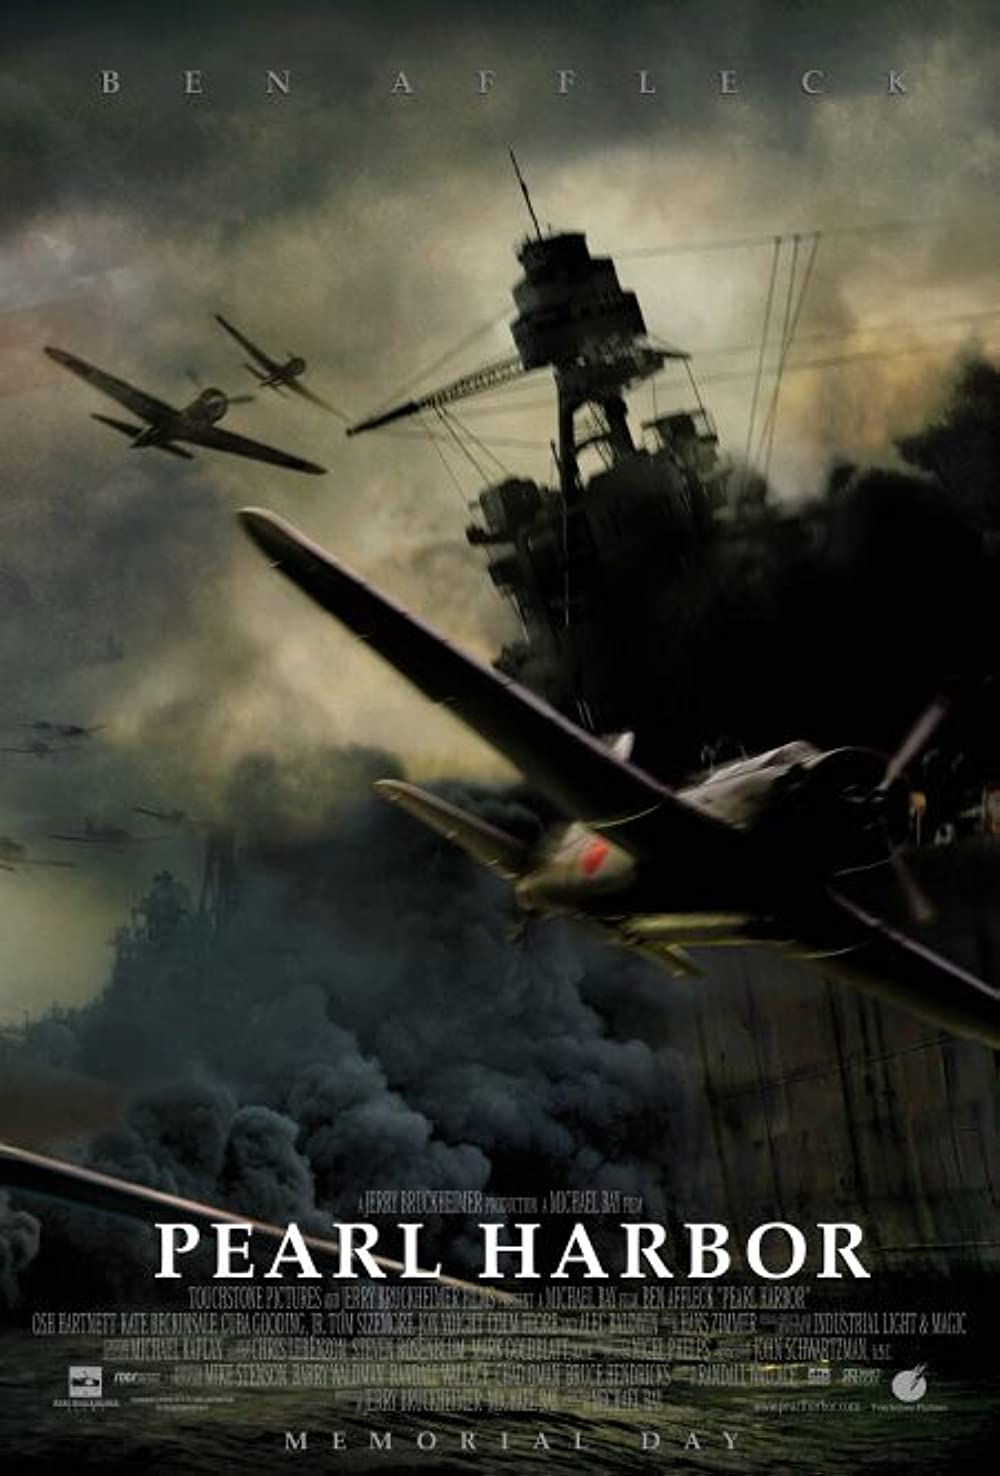 Filmbeschreibung zu Pearl Harbor